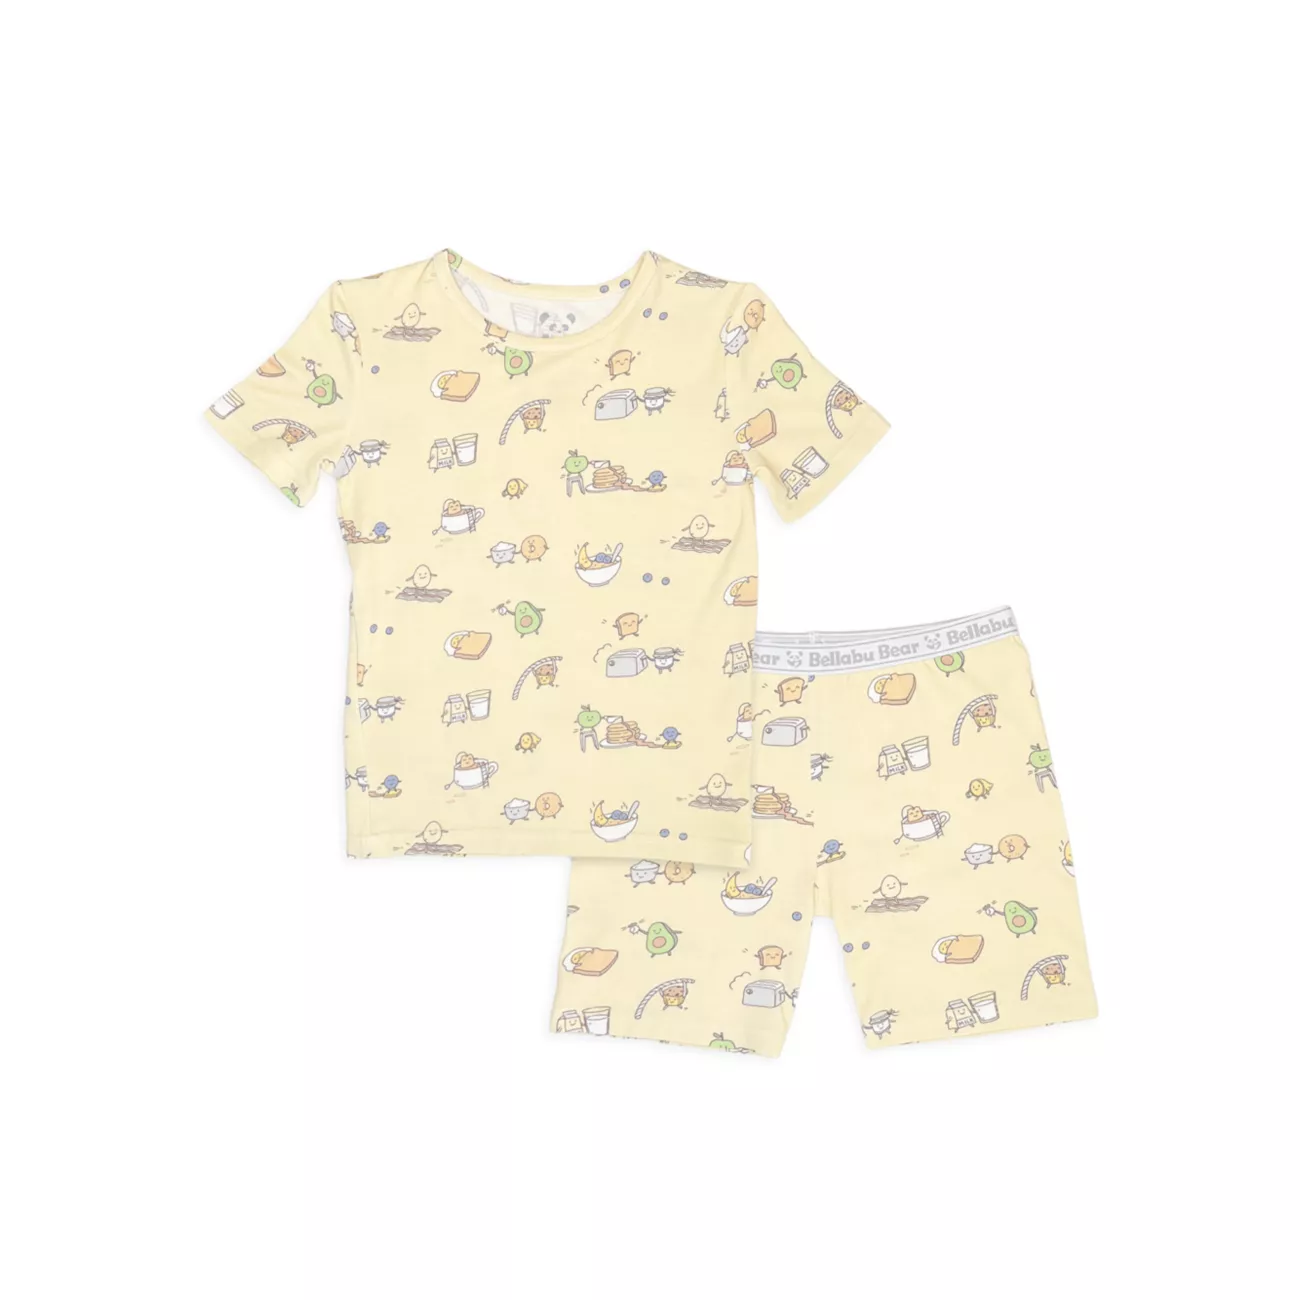 Baby, Little Kid's &amp; Детский комплект из двух пижамных шорт Love You для бранчей Bellabu Bear